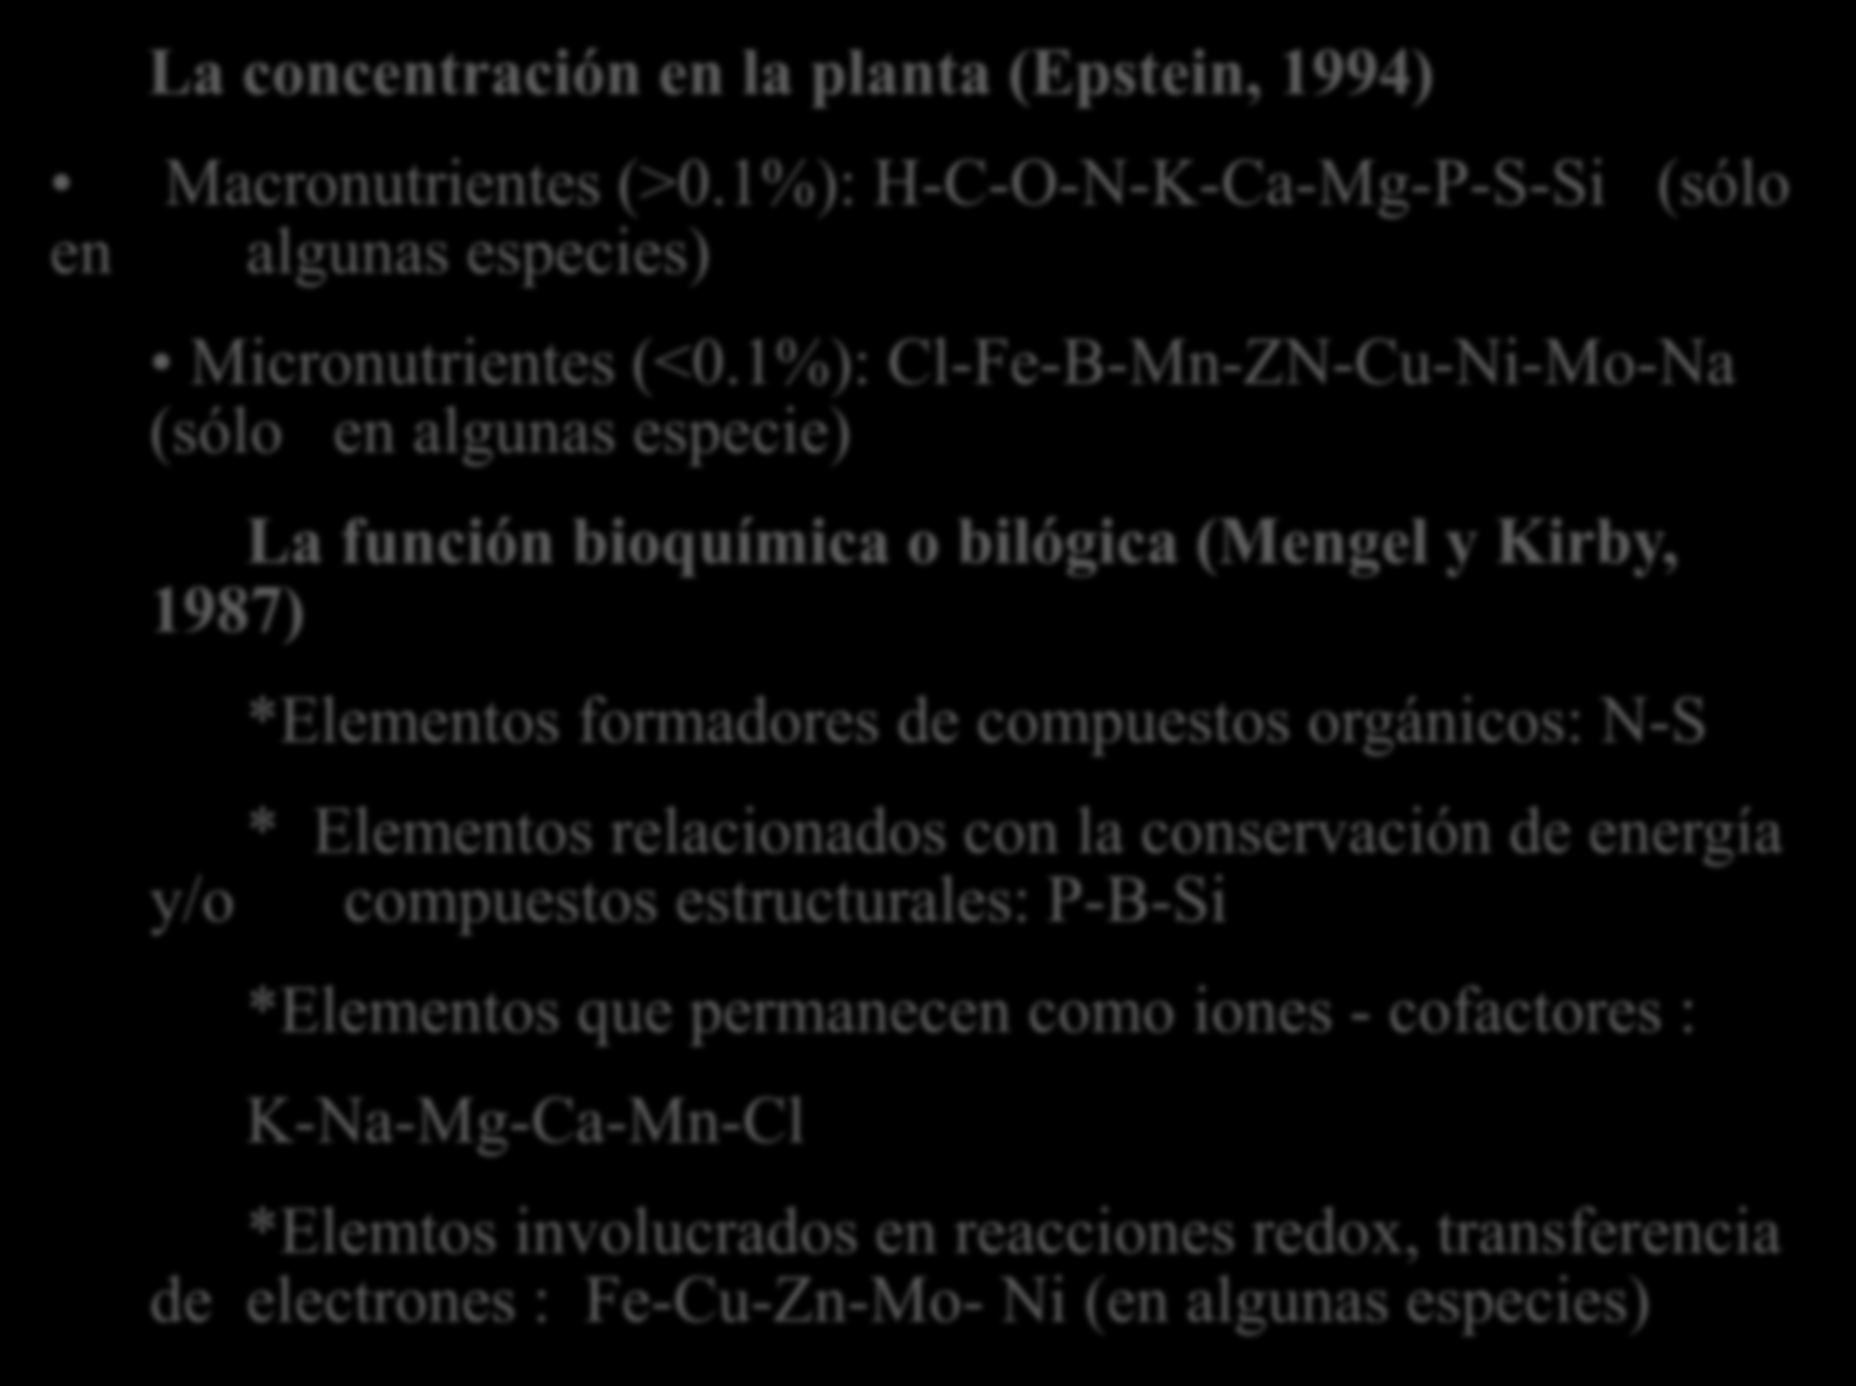 Clasificación de los elementos minerales La concentración en la planta (Epstein, 1994) Macronutrientes (>0.1%): H-C-O-N-K-Ca-Mg-P-S-Si (sólo en algunas especies) Micronutrientes (<0.